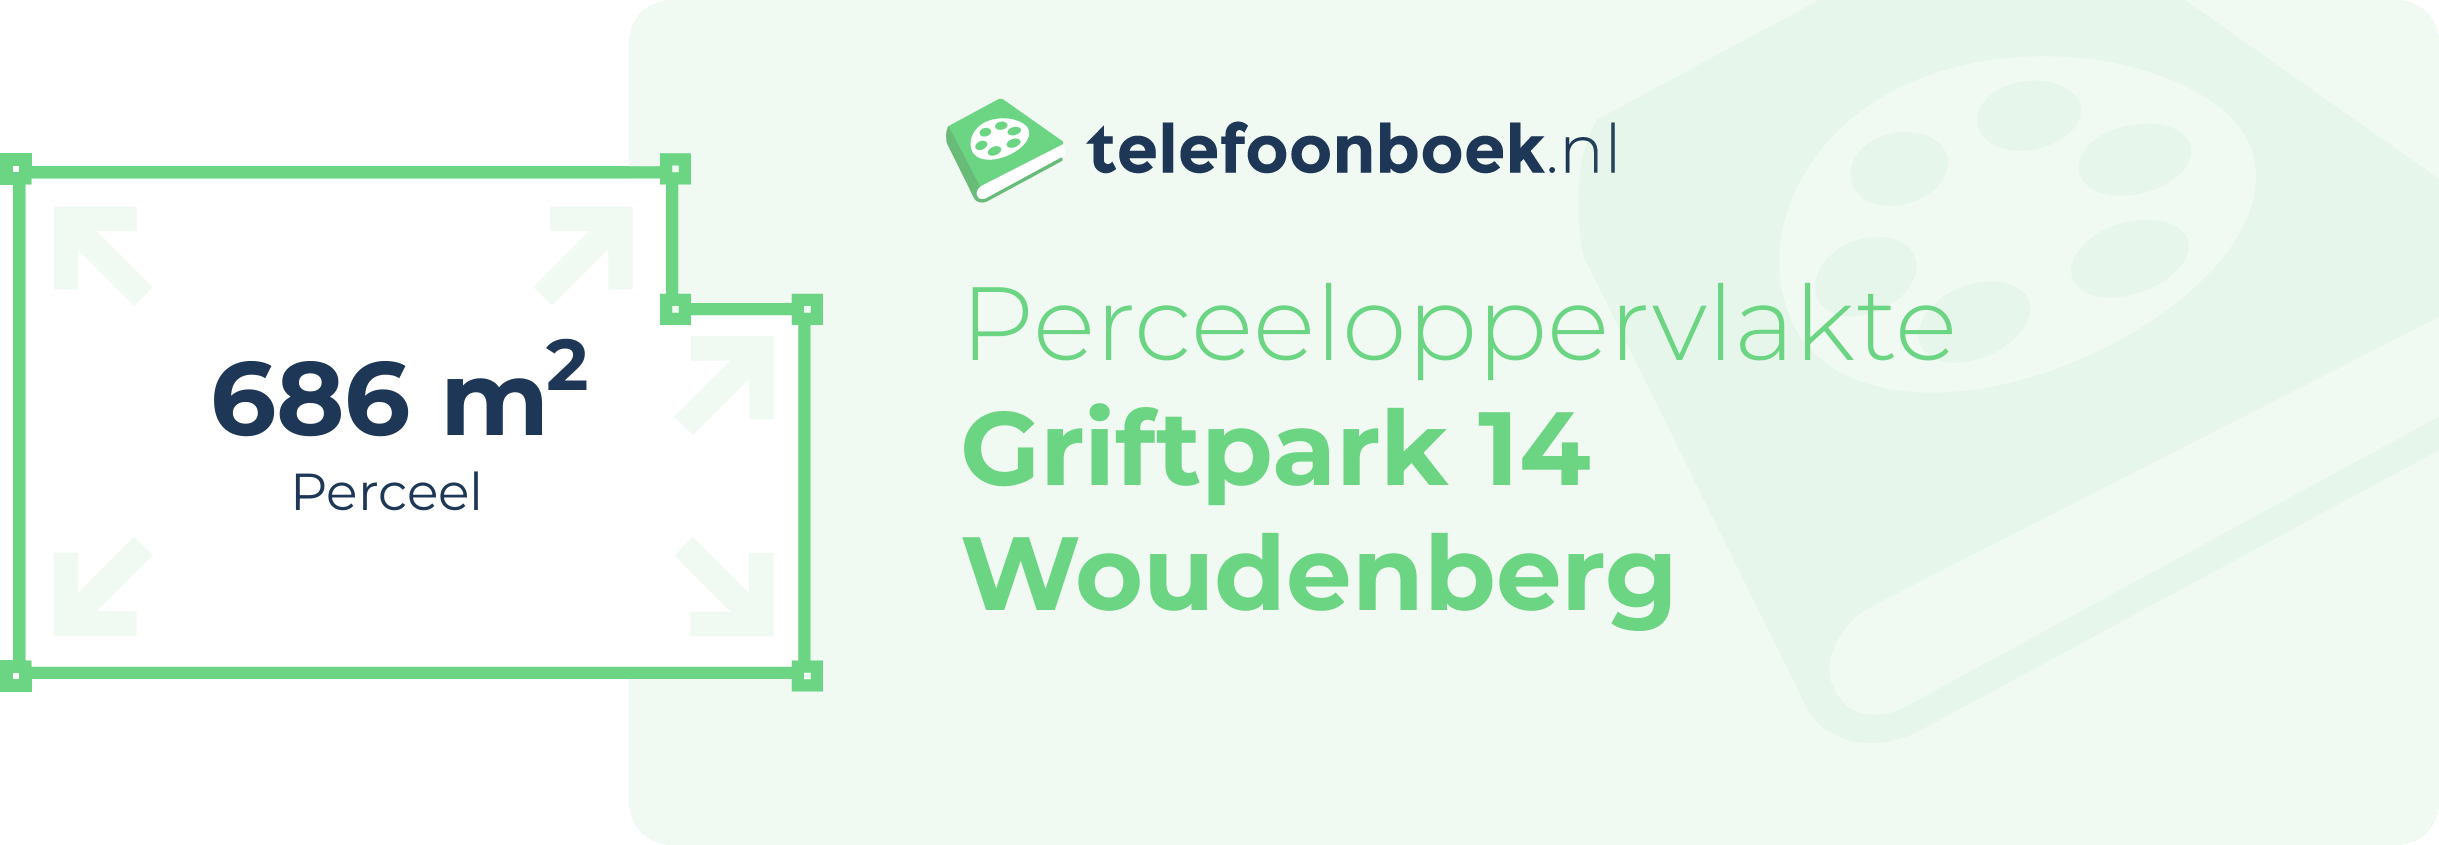 Perceeloppervlakte Griftpark 14 Woudenberg